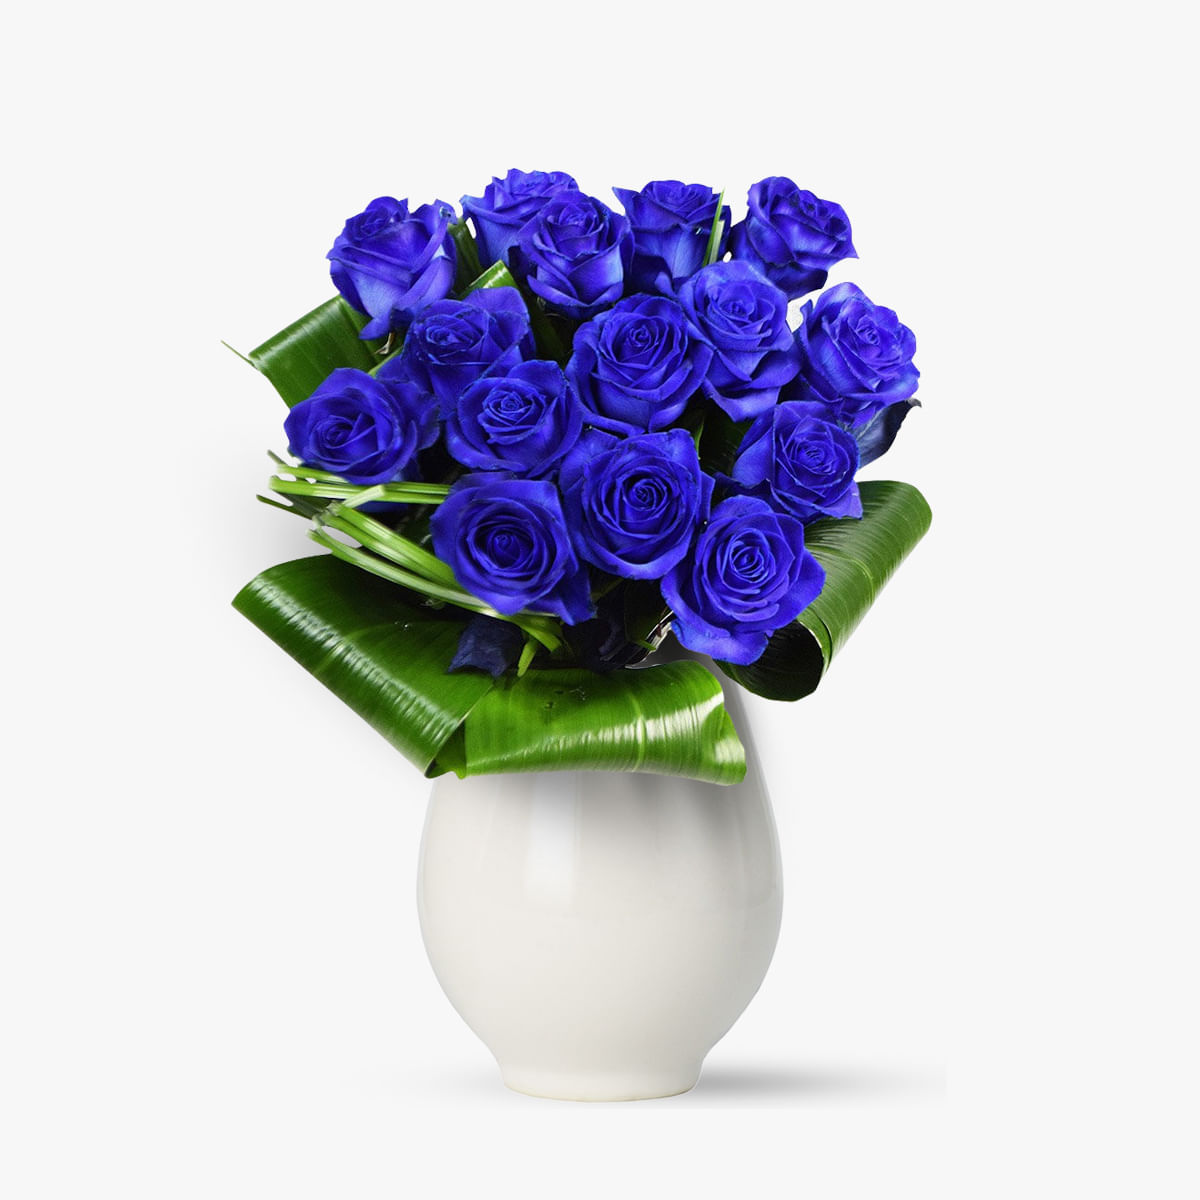 Buchet de 15 trandafiri albastri – Standard albastri imagine 2022